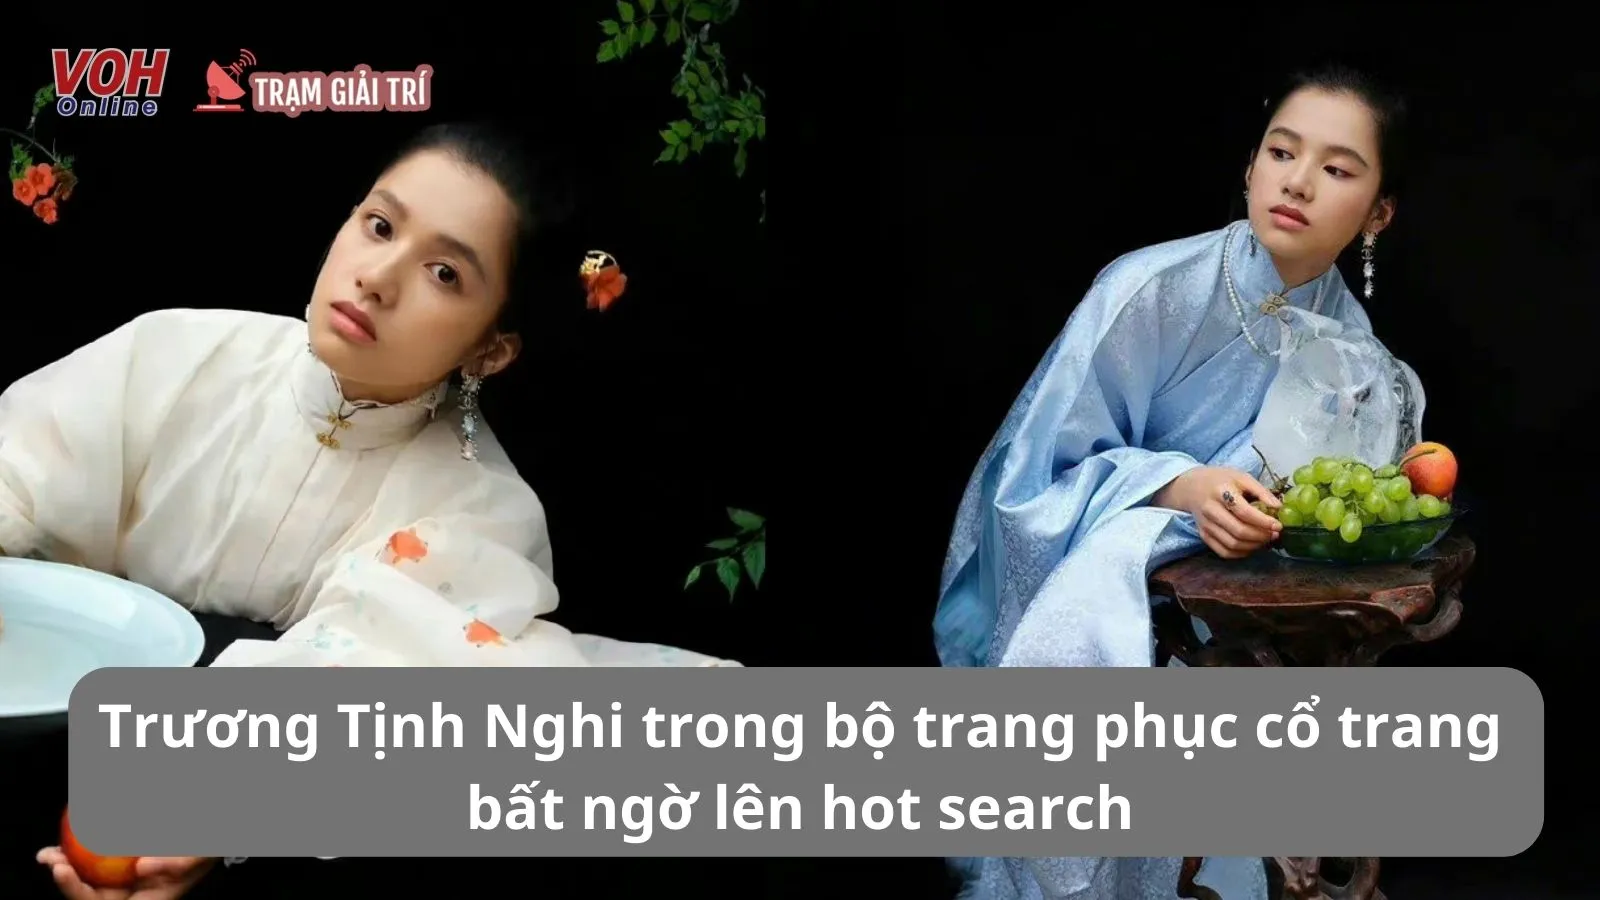 Trương Tịnh Nghi bất ngờ lên hot search với bộ ảnh diện trang phục cổ trang